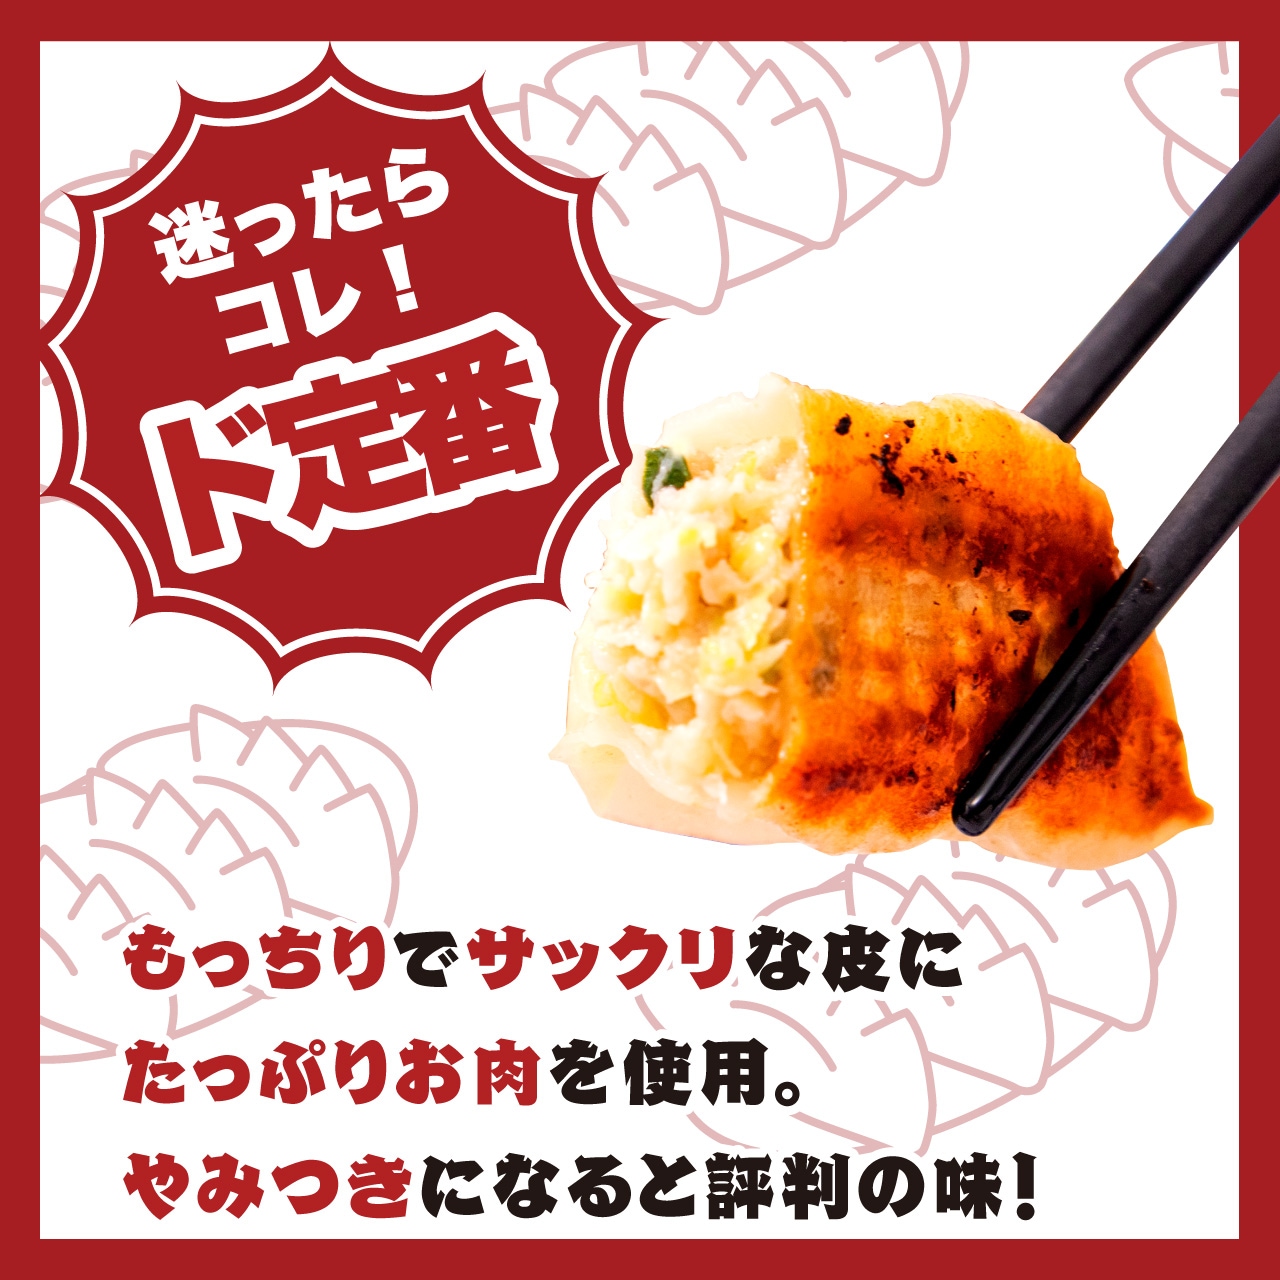 定番の大阪ふくちぁん餃子。あっさりしていて何個でも食べられる美味しさ